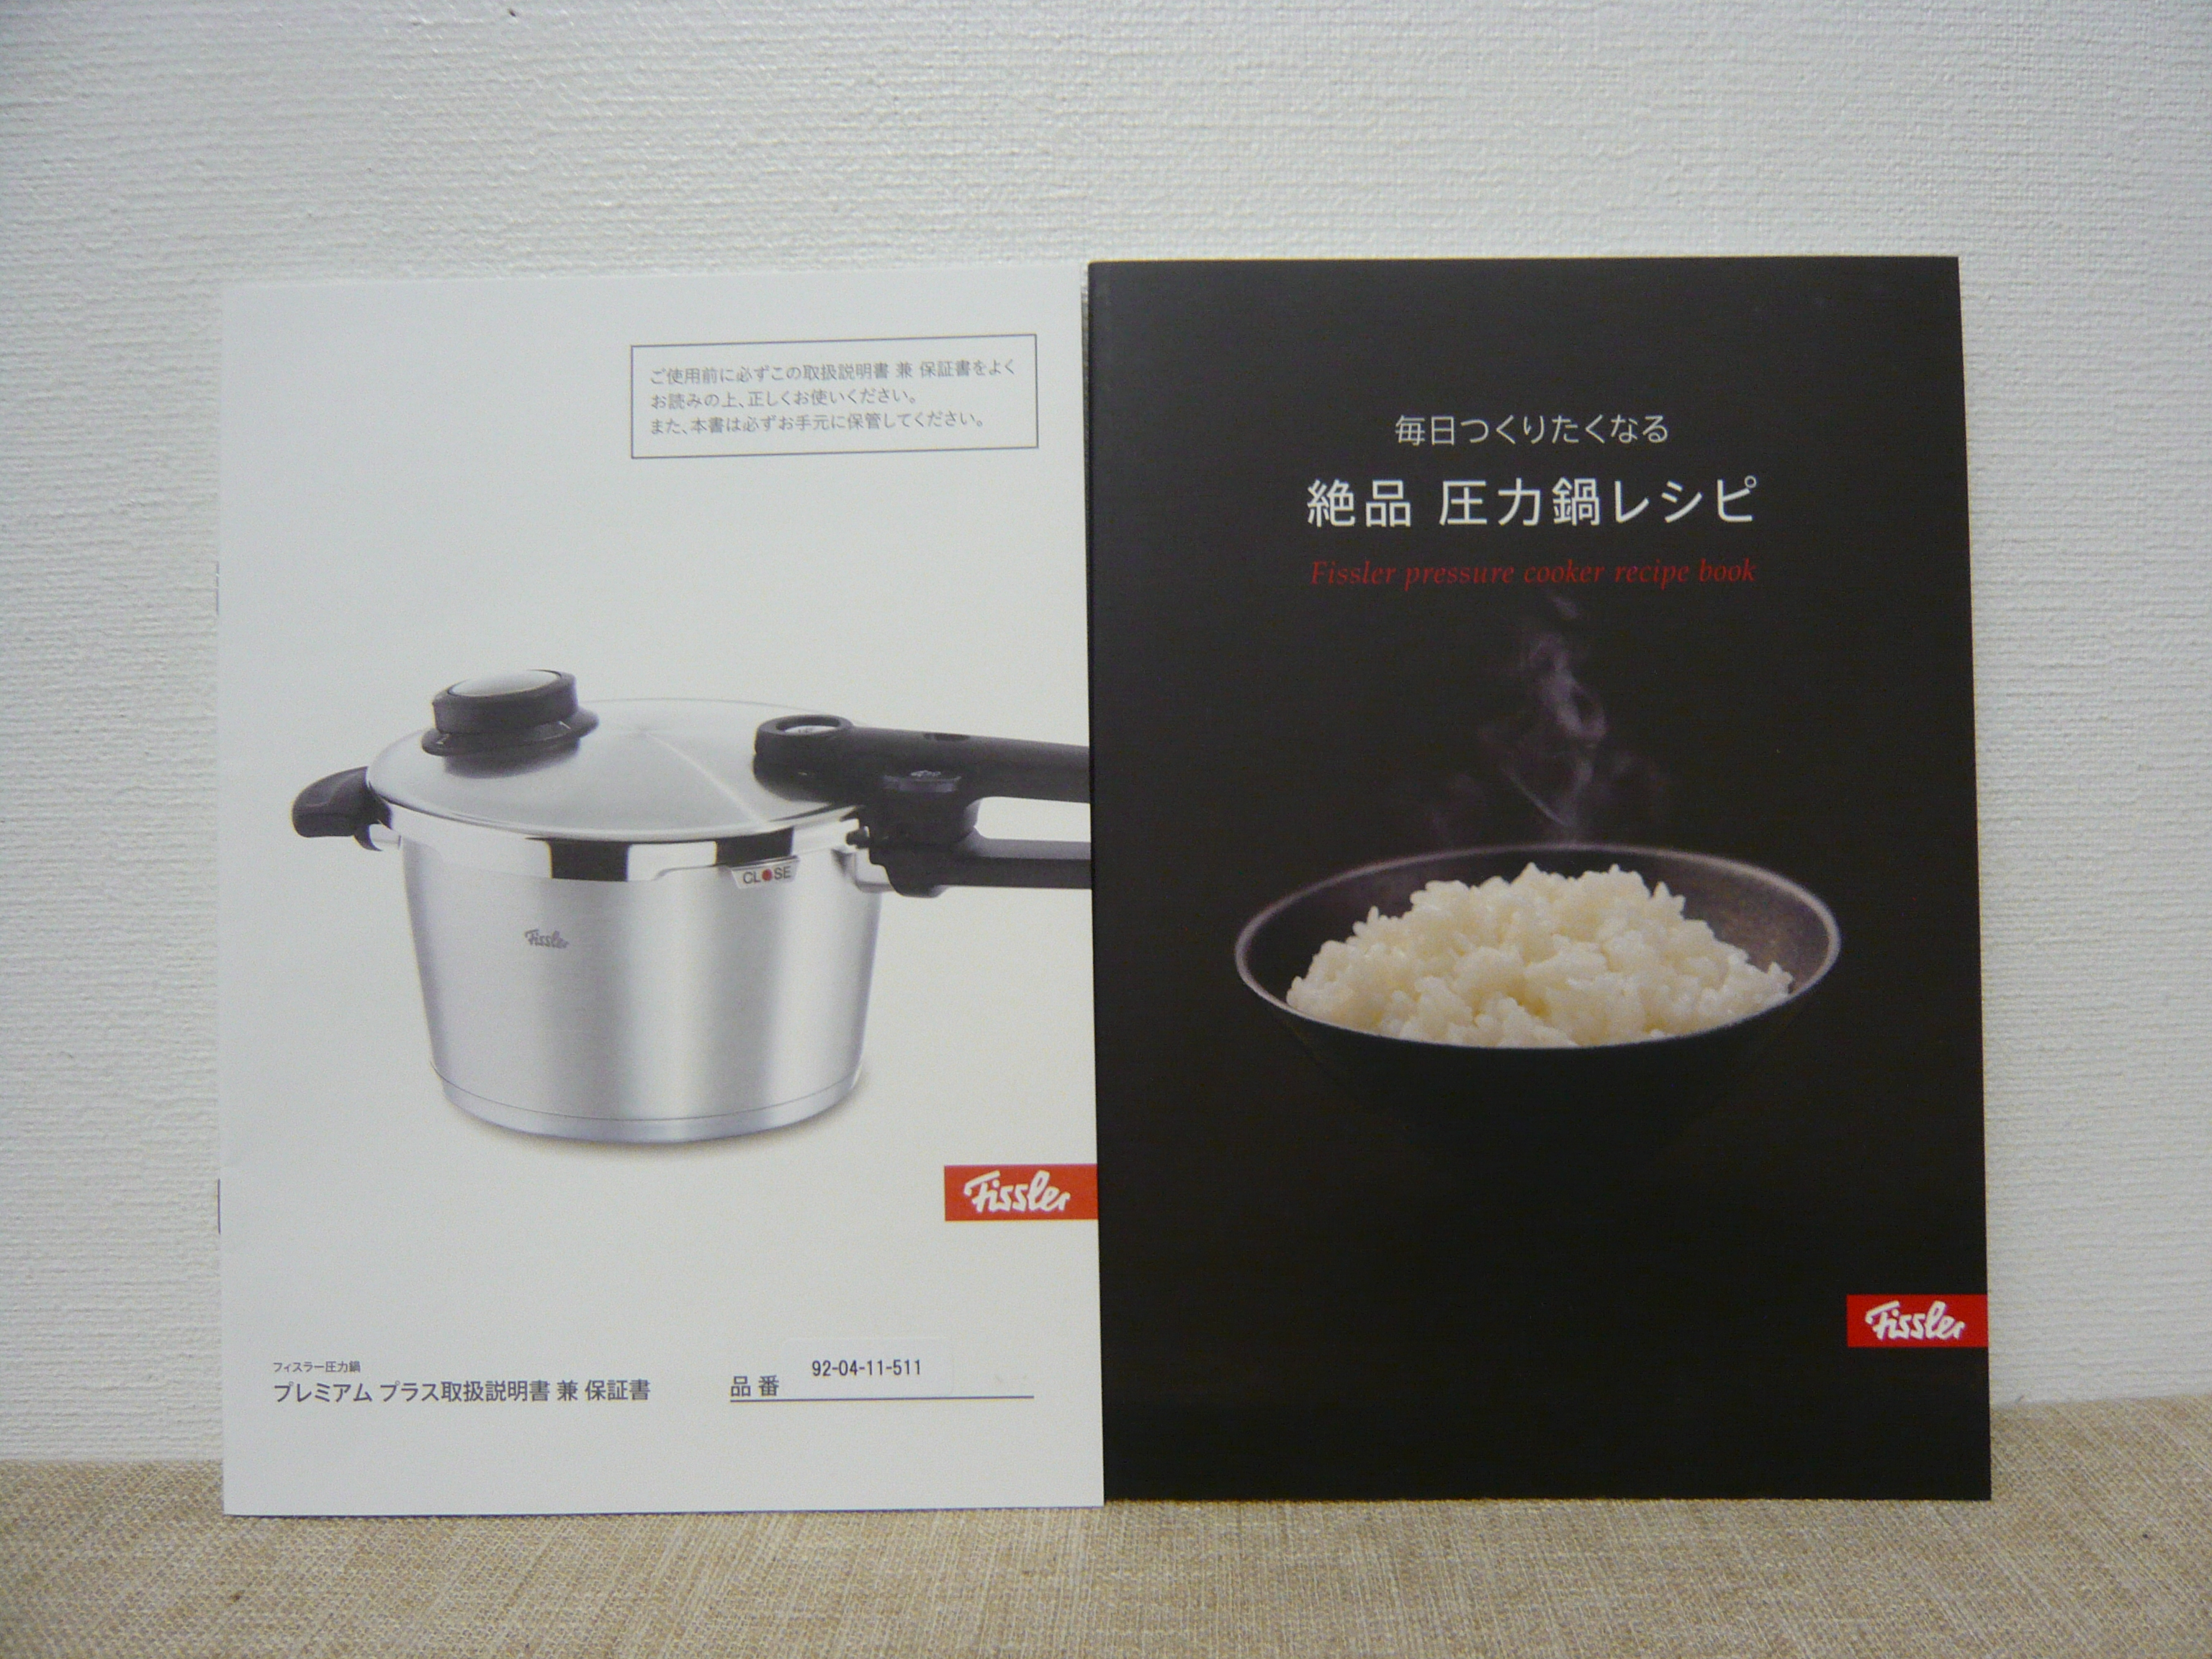 キッチン/食器 春新作の 超高圧 圧力鍋 fissler Subara shii